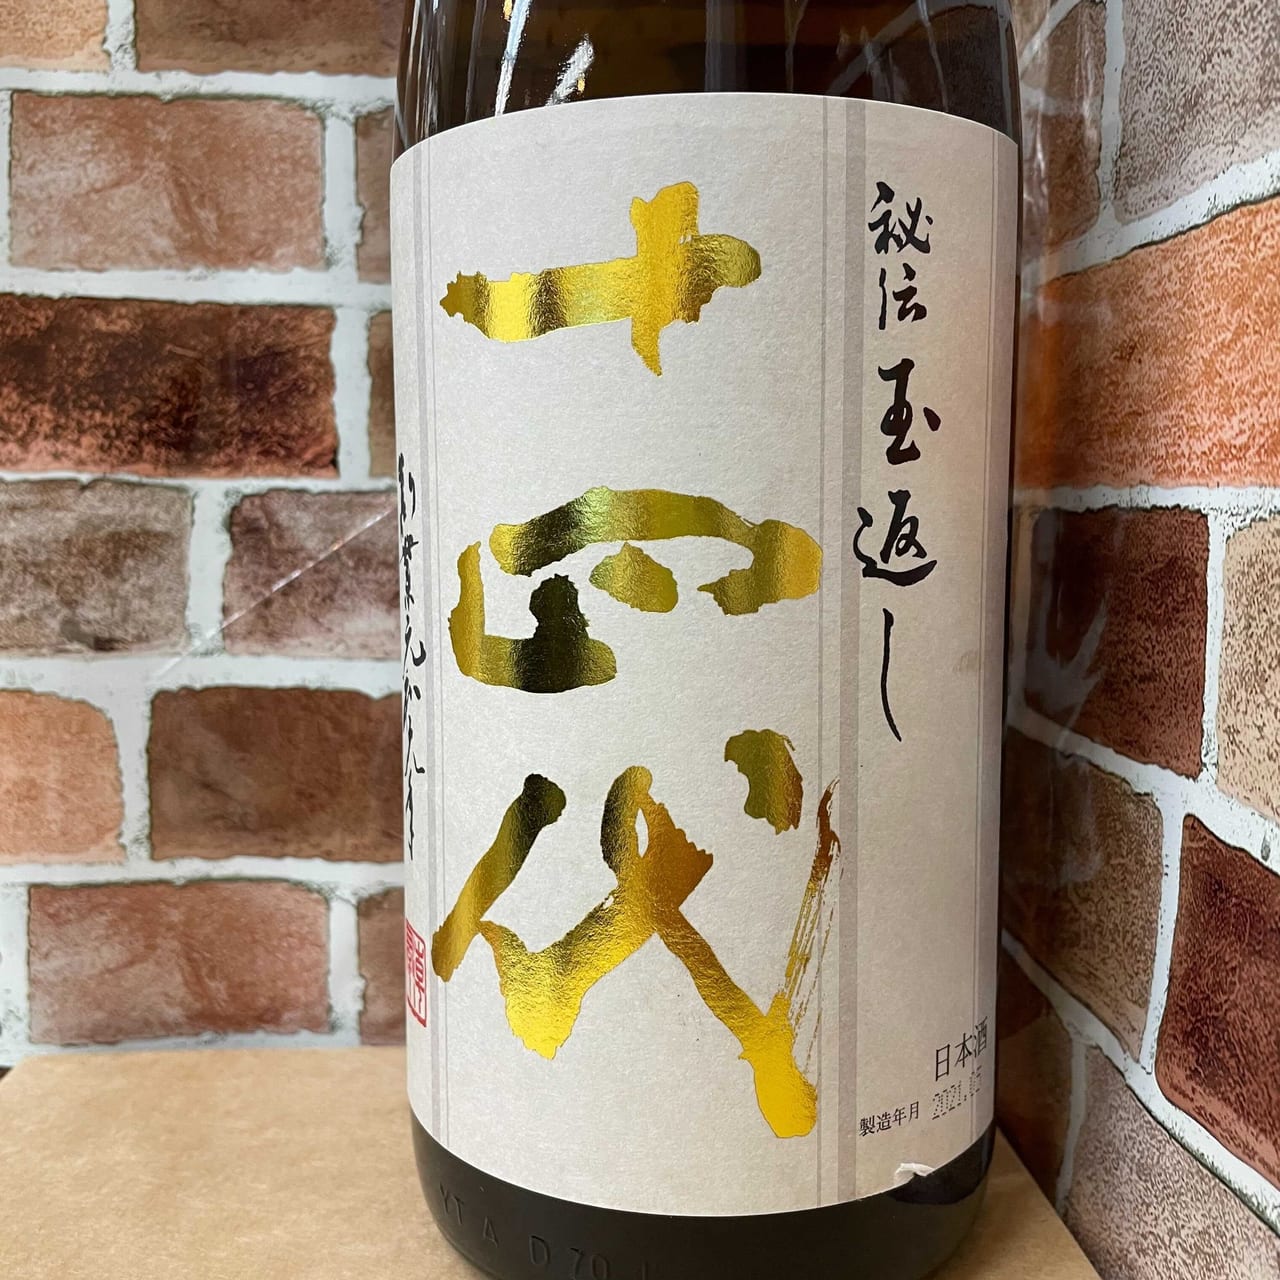 食品/飲料/酒十四代 本丸 2020年5月製造 - 日本酒